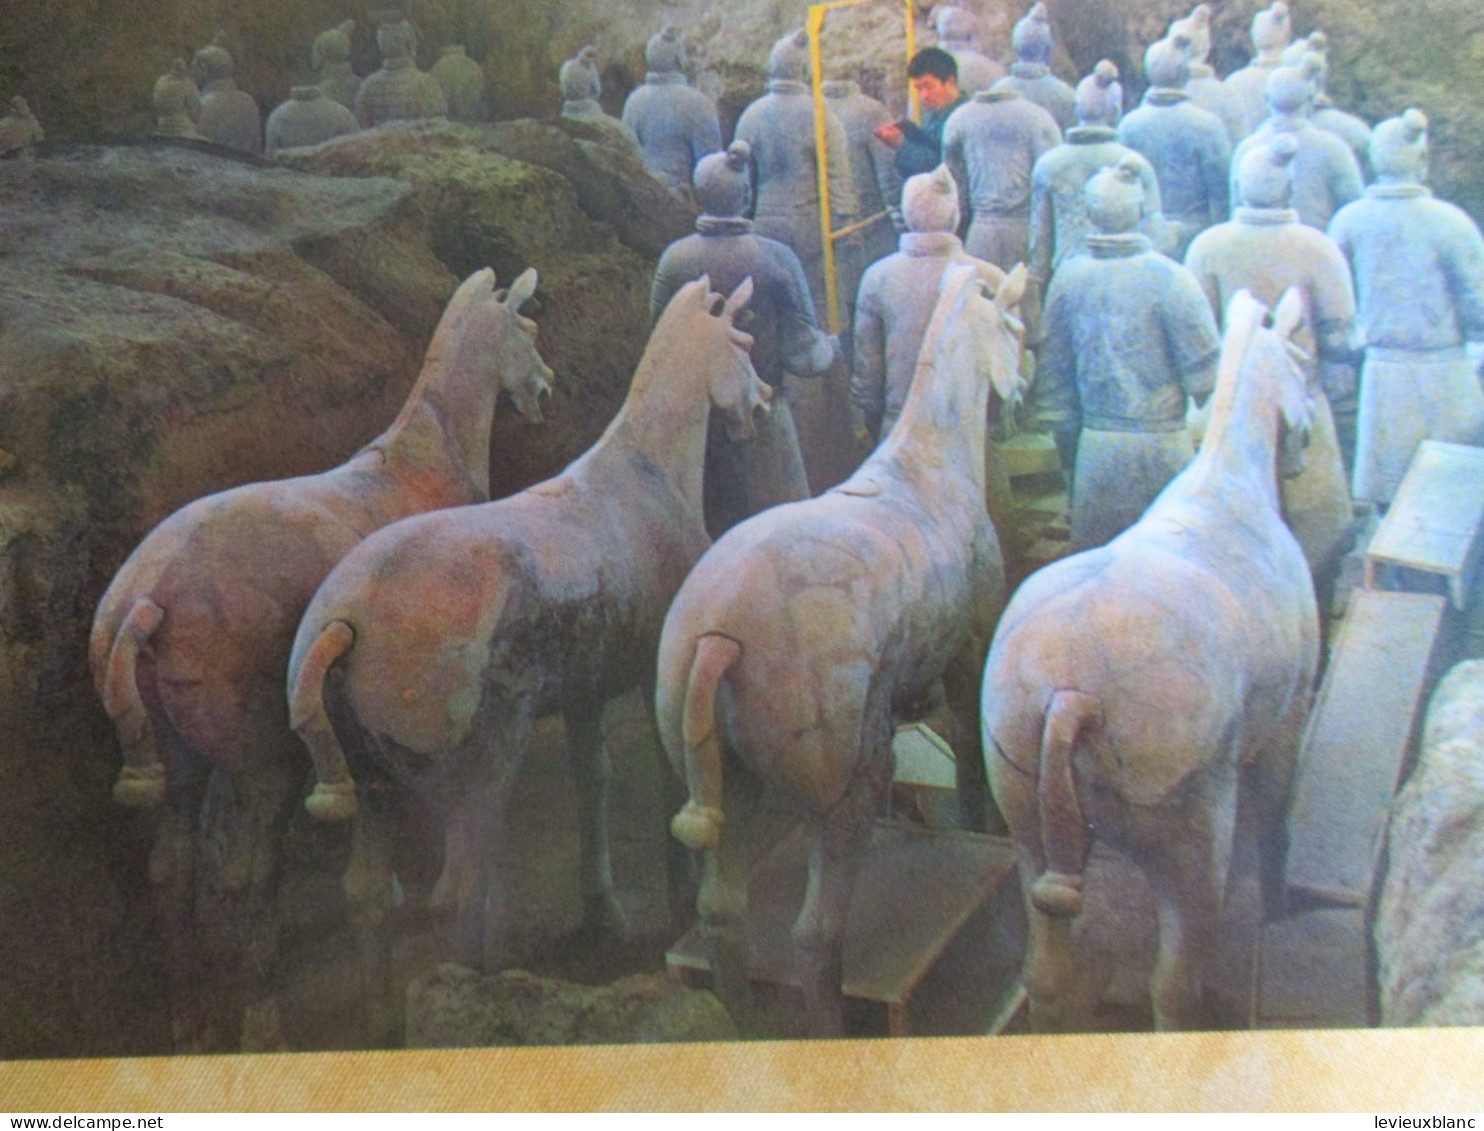 10 cartes postales anciennes/Tomb of Quin Shi Huang/ Museum of Pottery / République Populaire de Chine / 1980      JAP56